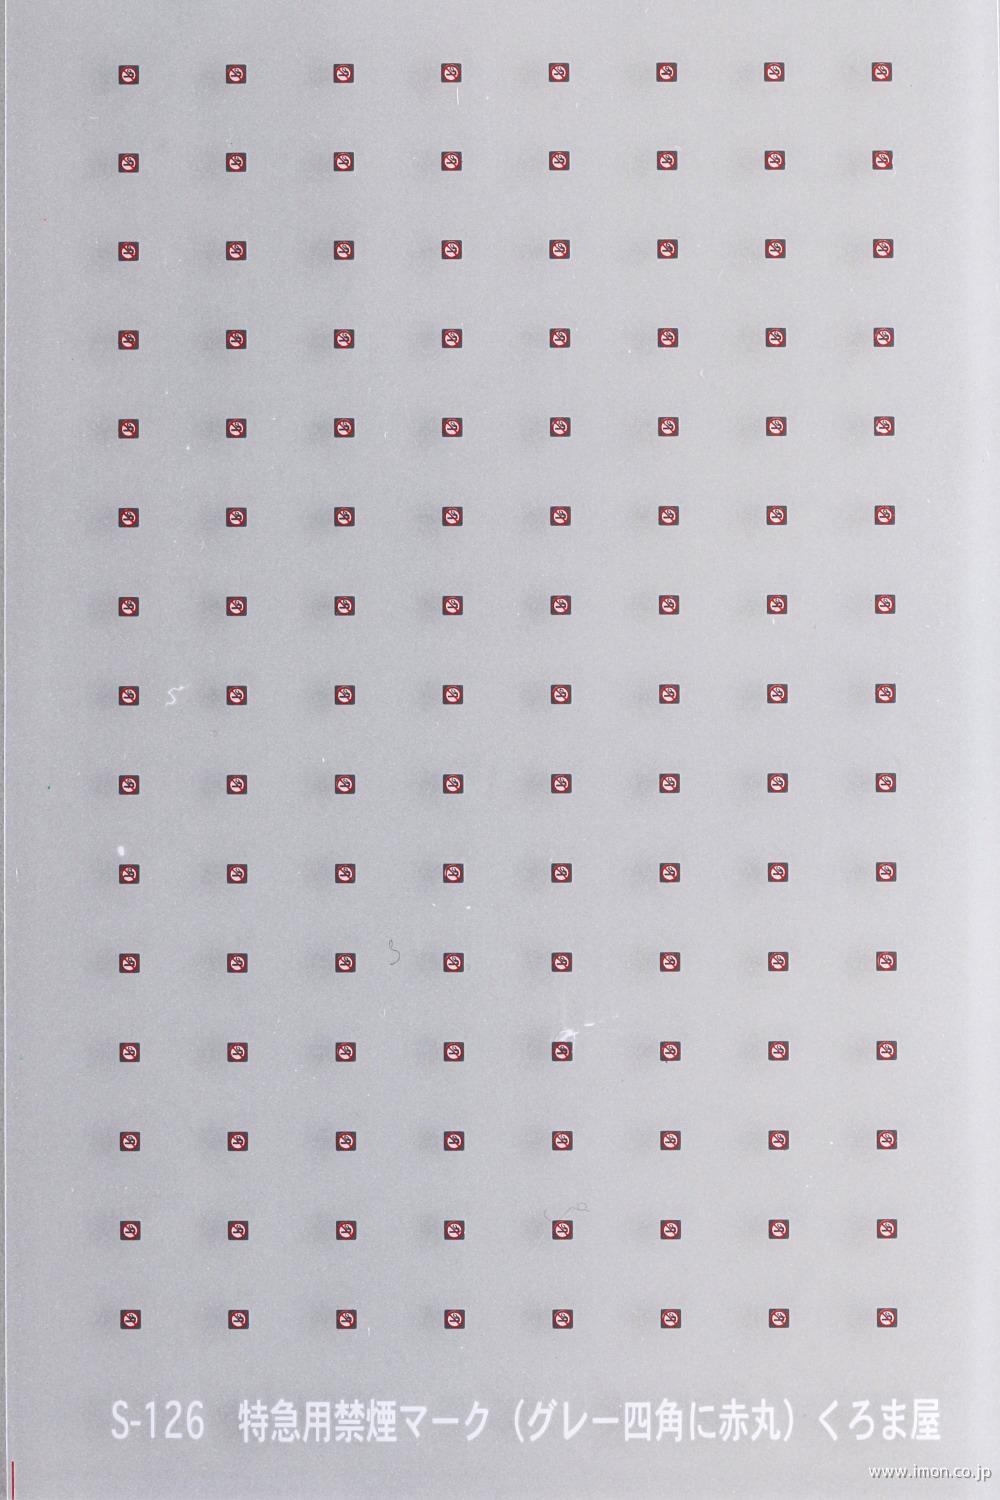 Ｓ－１２６　　特急用禁煙マーク（グレー四角に赤丸）　白・赤・グレー３色